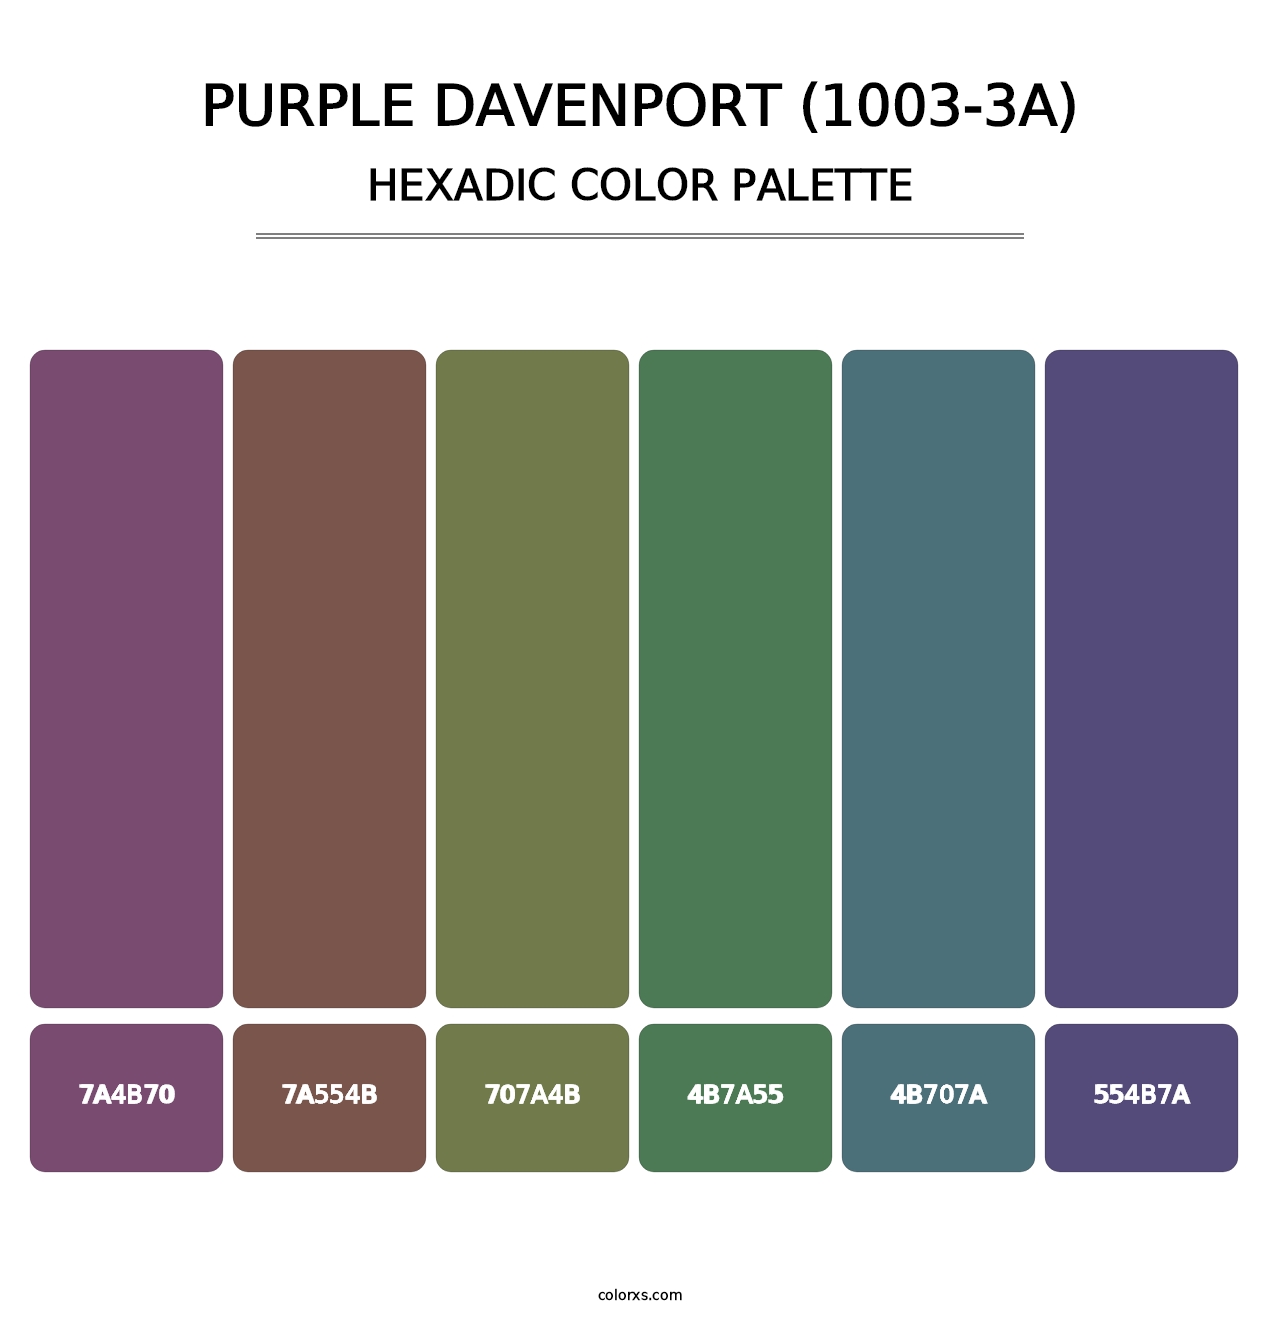 Purple Davenport (1003-3A) - Hexadic Color Palette